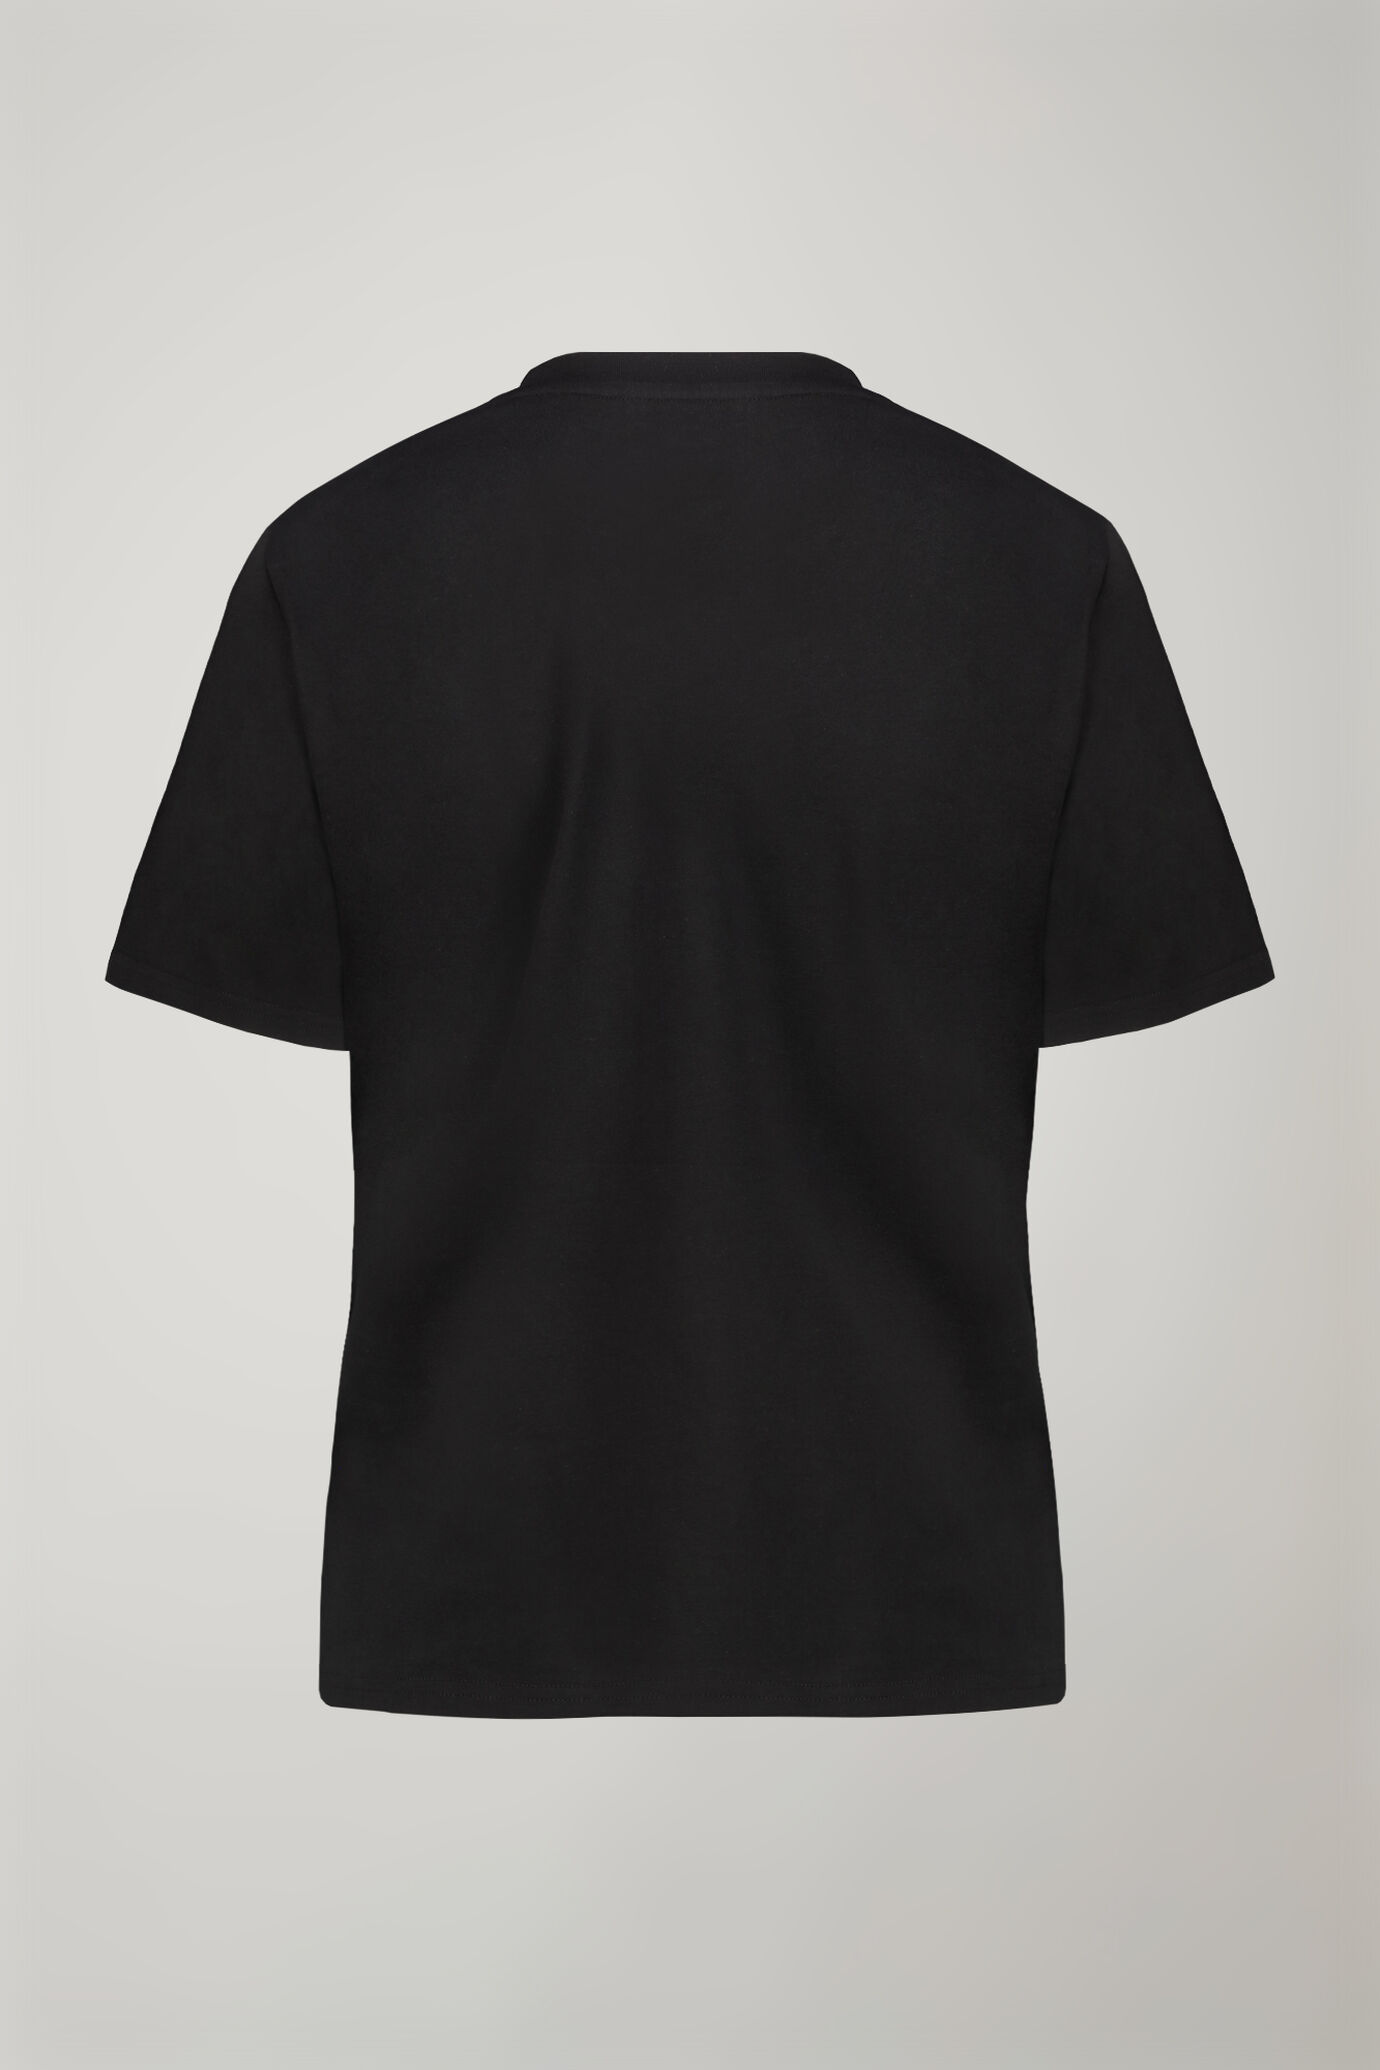 Women’s v-neck t-shirt 100% cotton regular fit image number 5